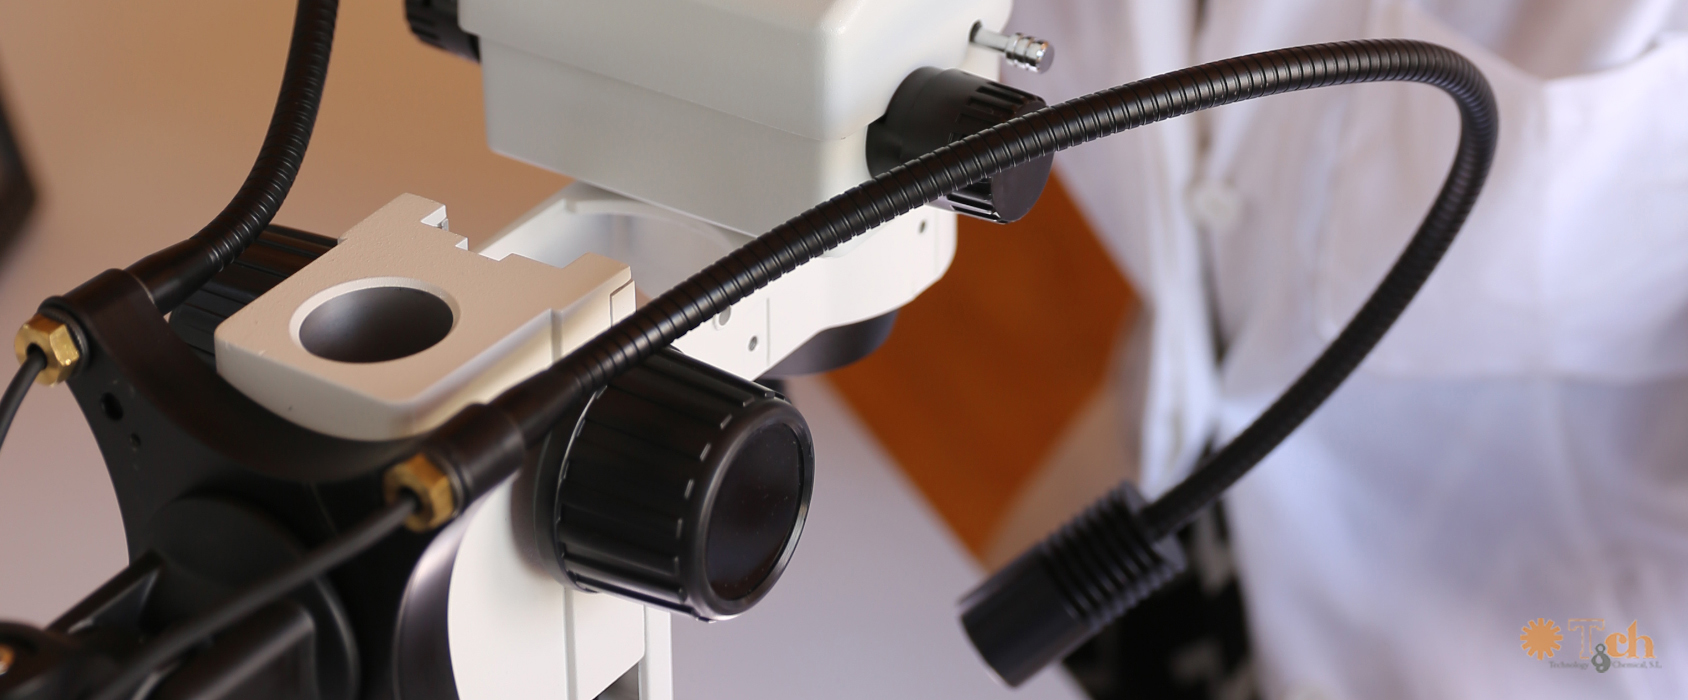 microscopio analógico para inspección electrónica